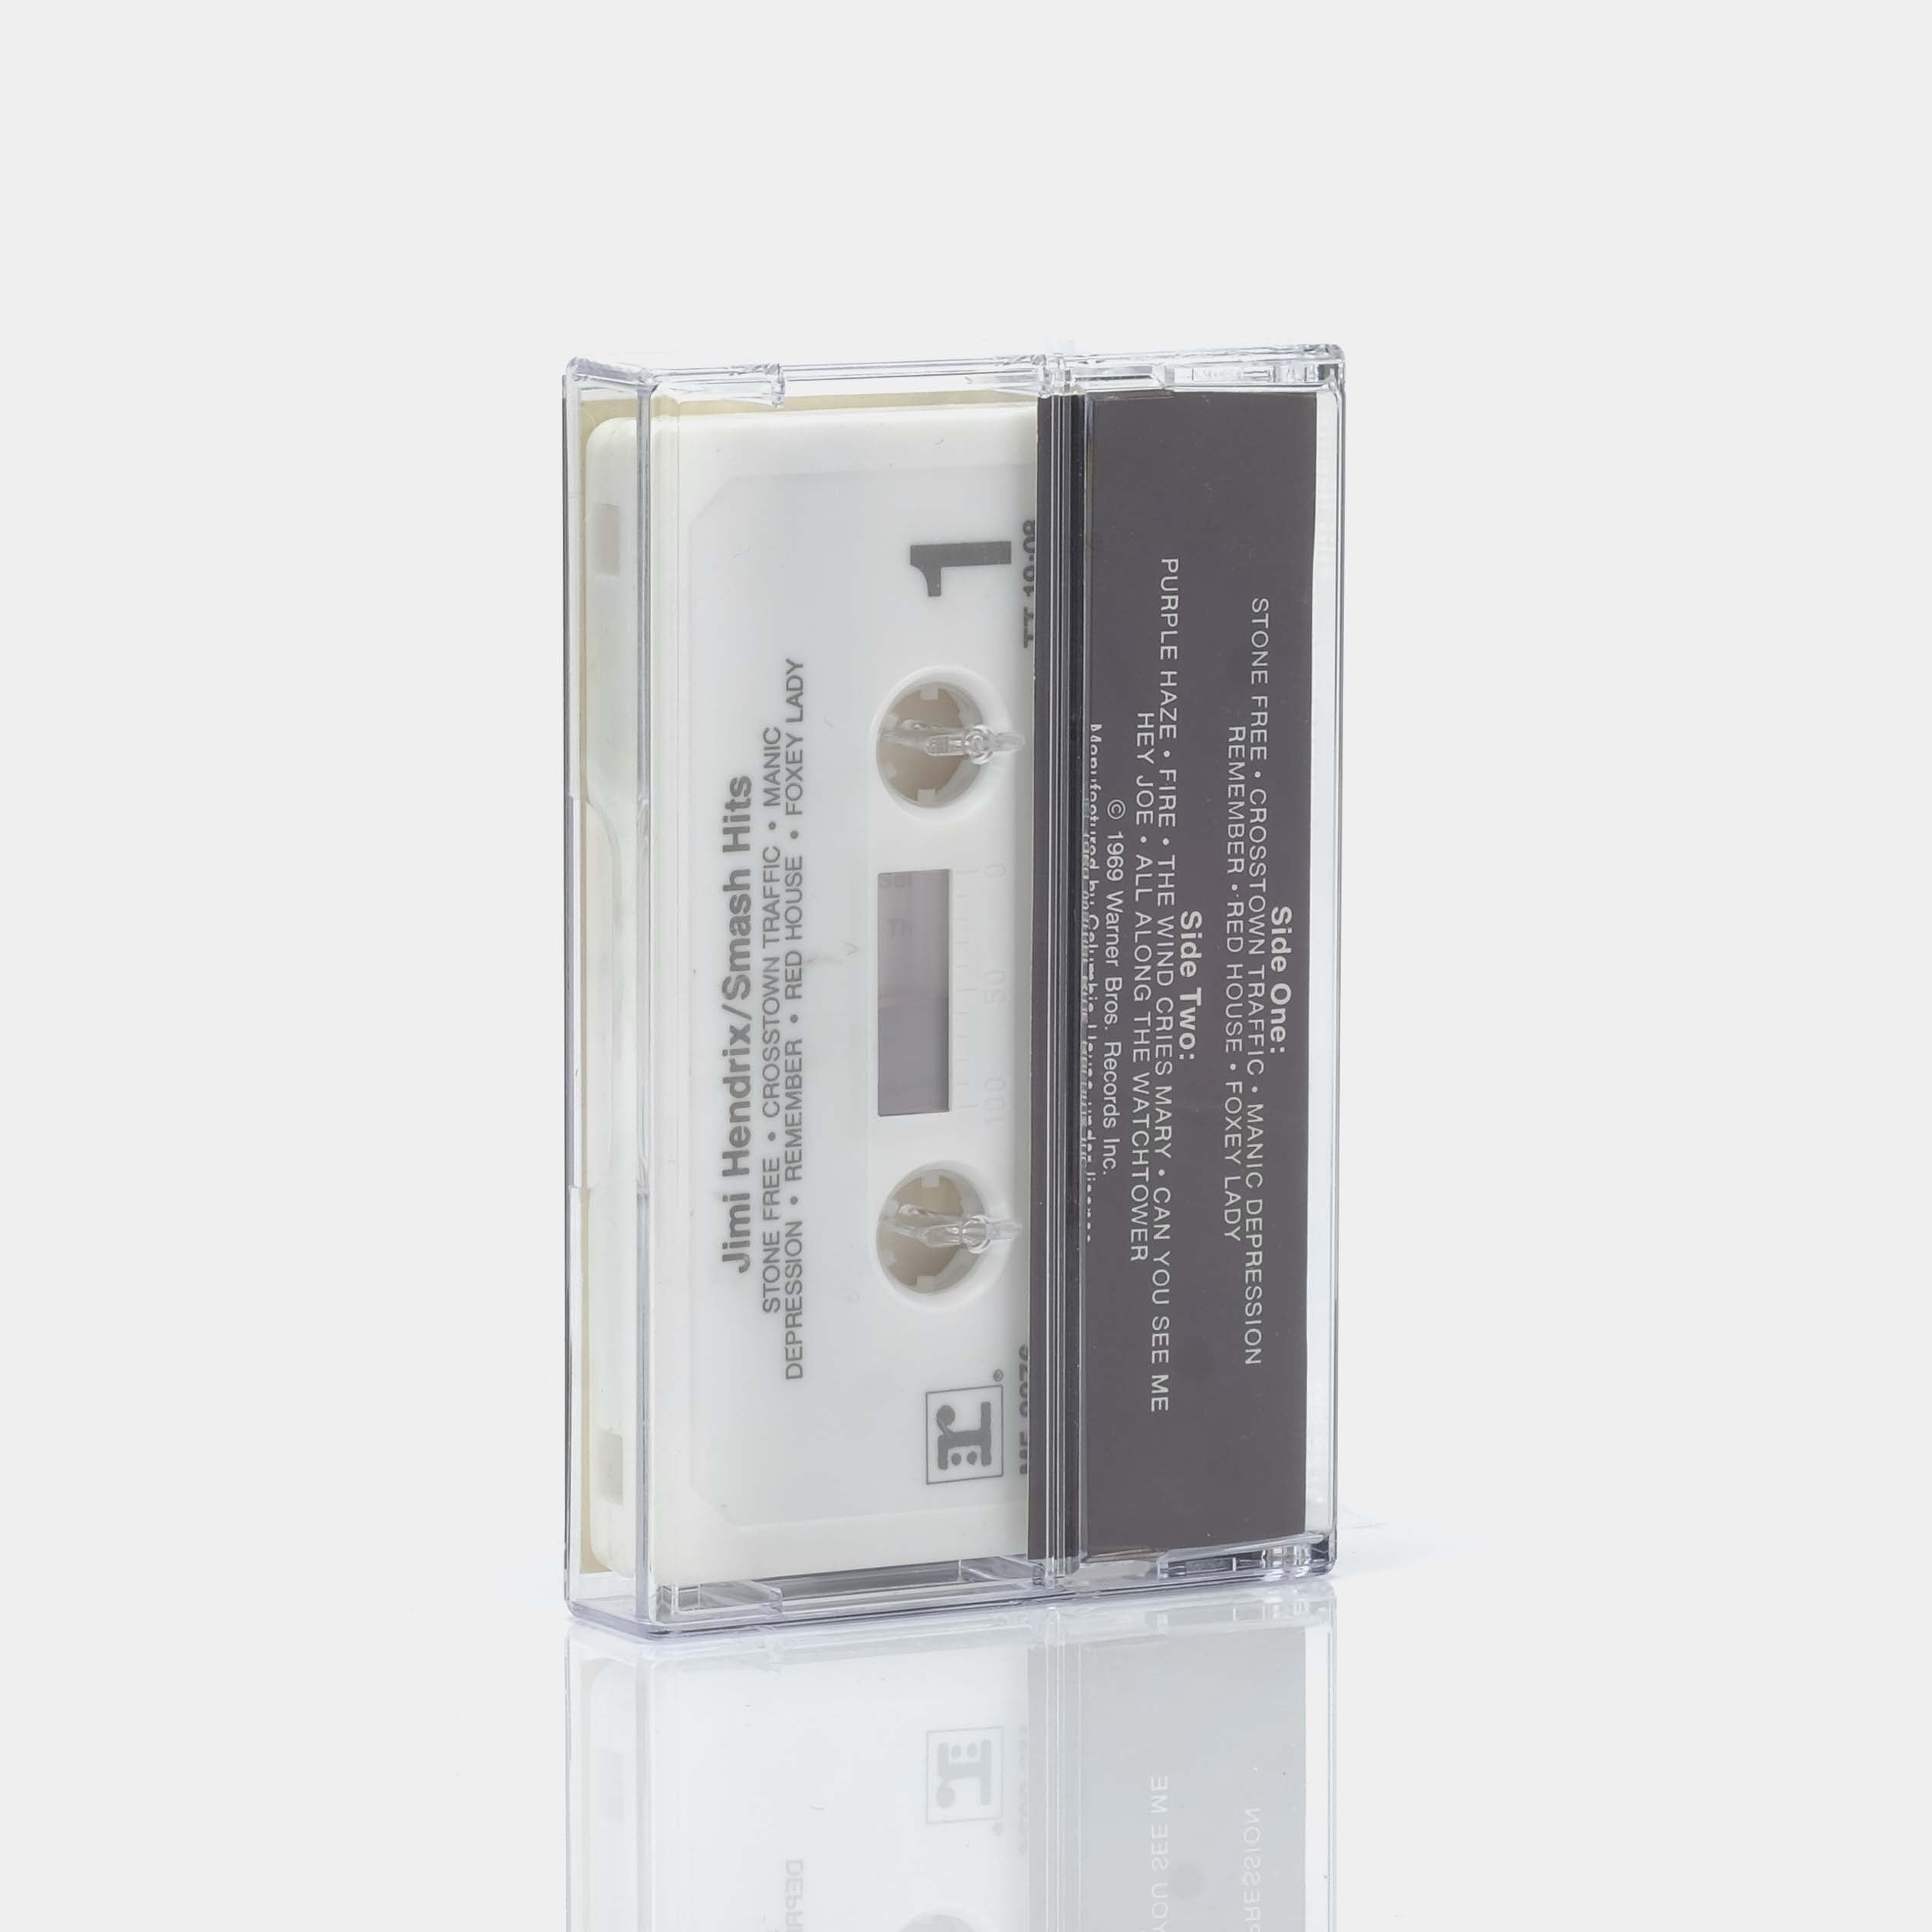 Jimi Hendrix - Smash Hits Cassette Tape